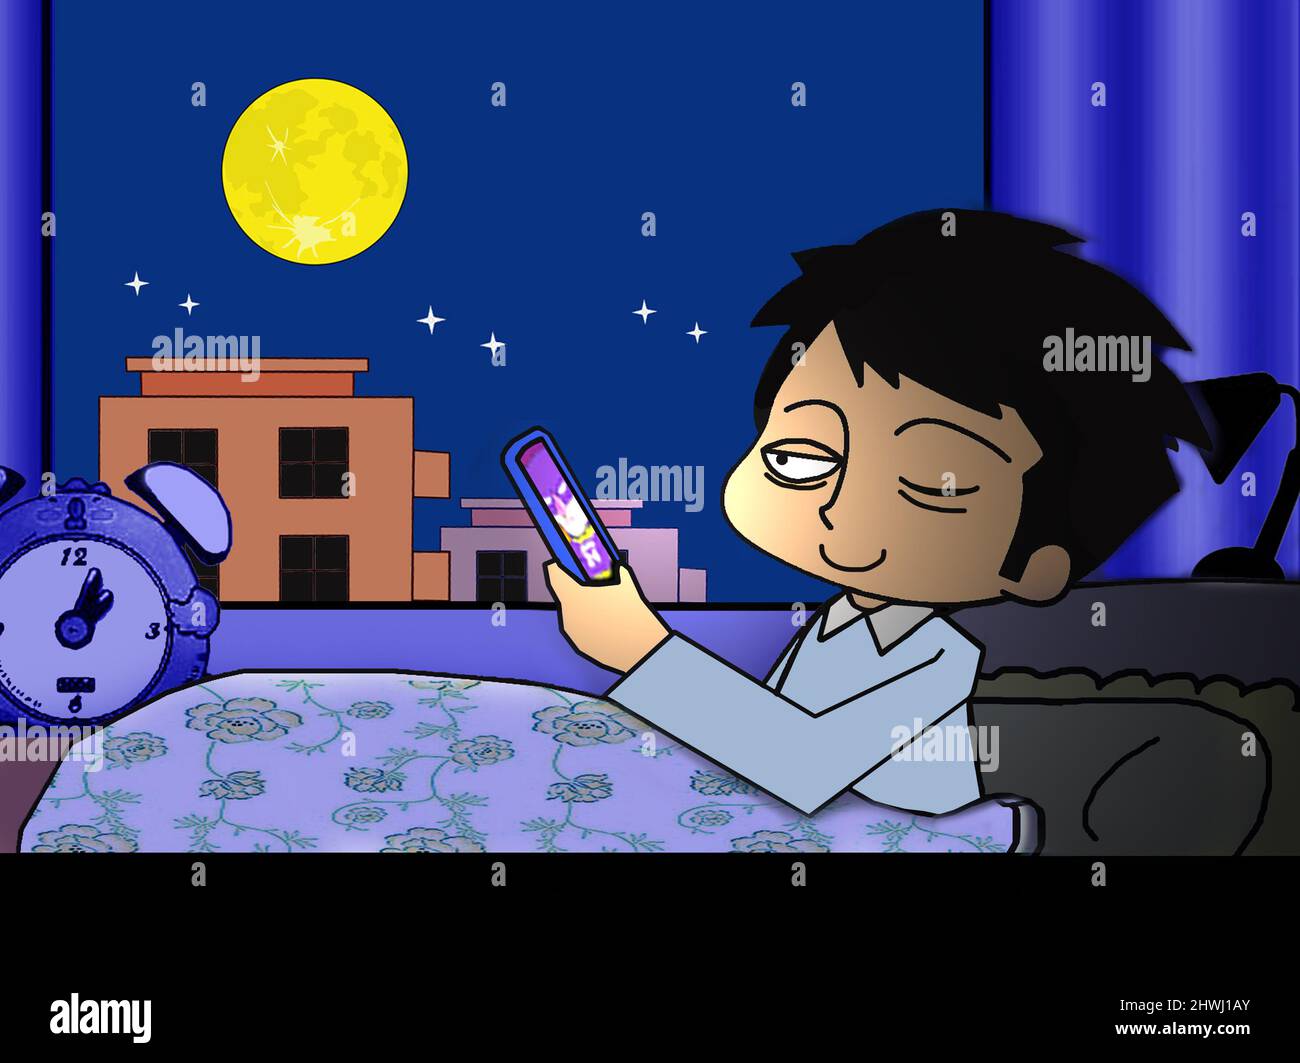 SHANGHAI, CINA - 6 MARZO 2022 - Un cartone animato mostra un bambino che guarda un telefono cellulare prima di andare a letto, Shanghai, Cina, 6 marzo 2022. Mostra di ricerca Foto Stock